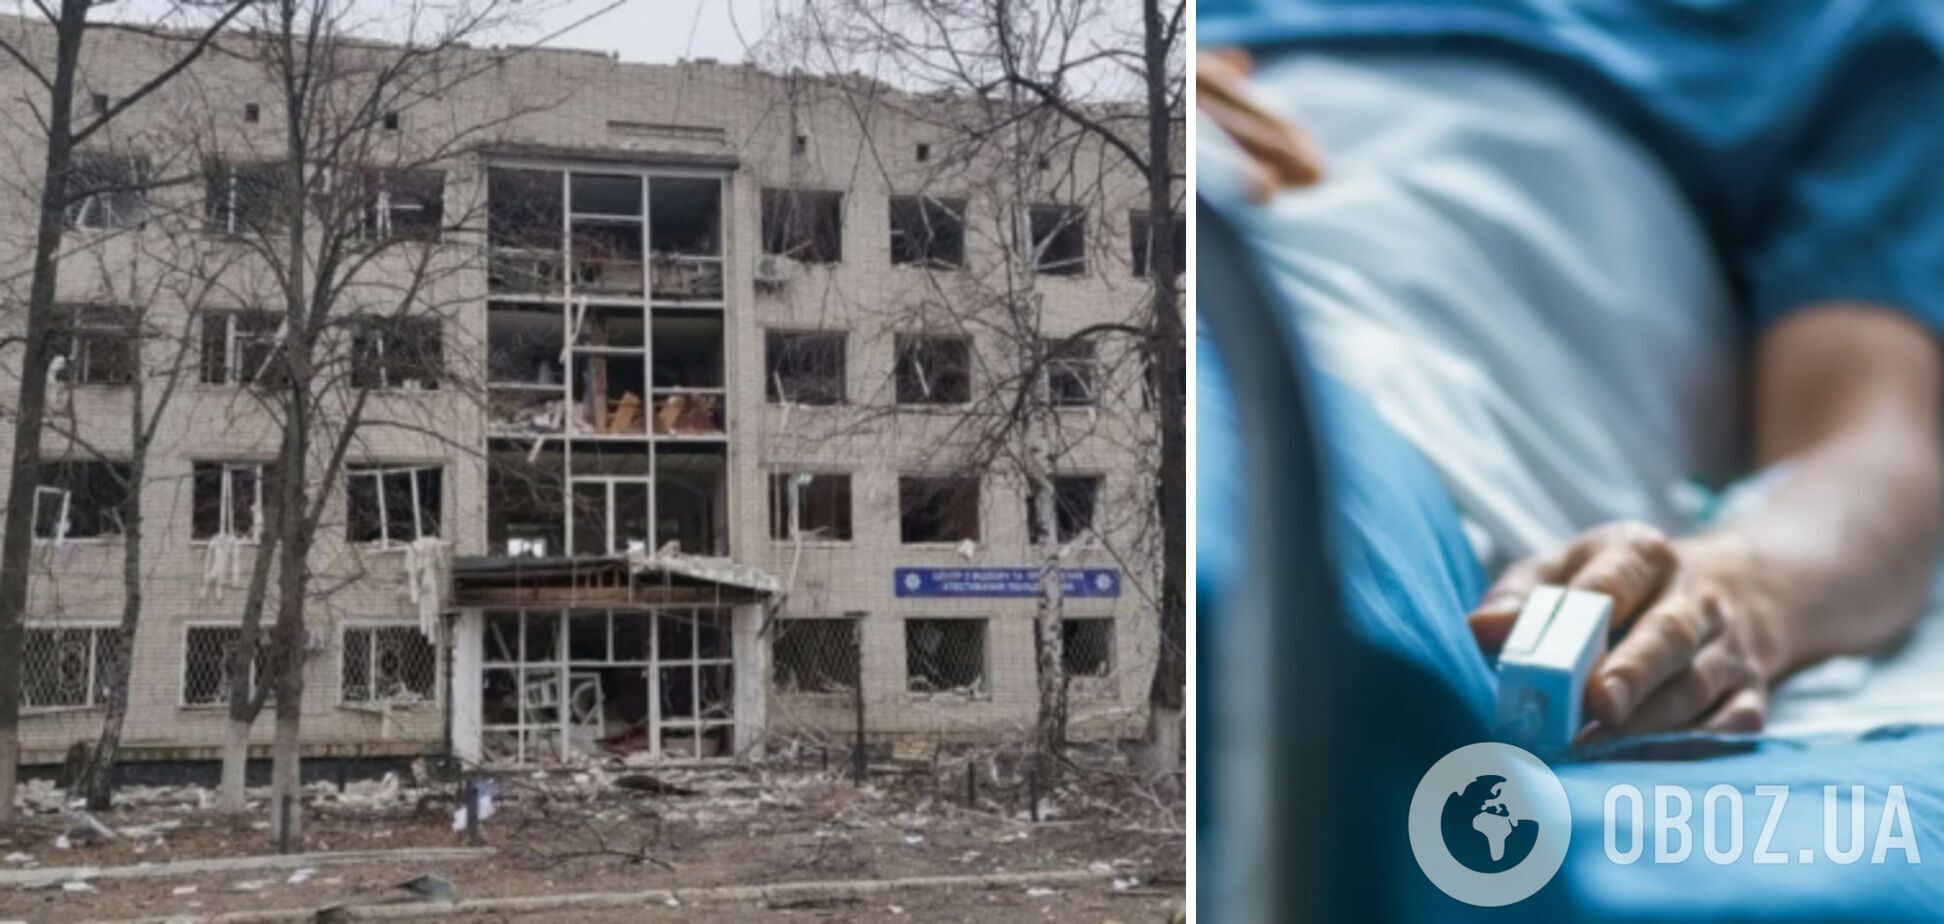 Российские оккупанты разбомбили больницу в Чернигове, - мэр Атрошенко